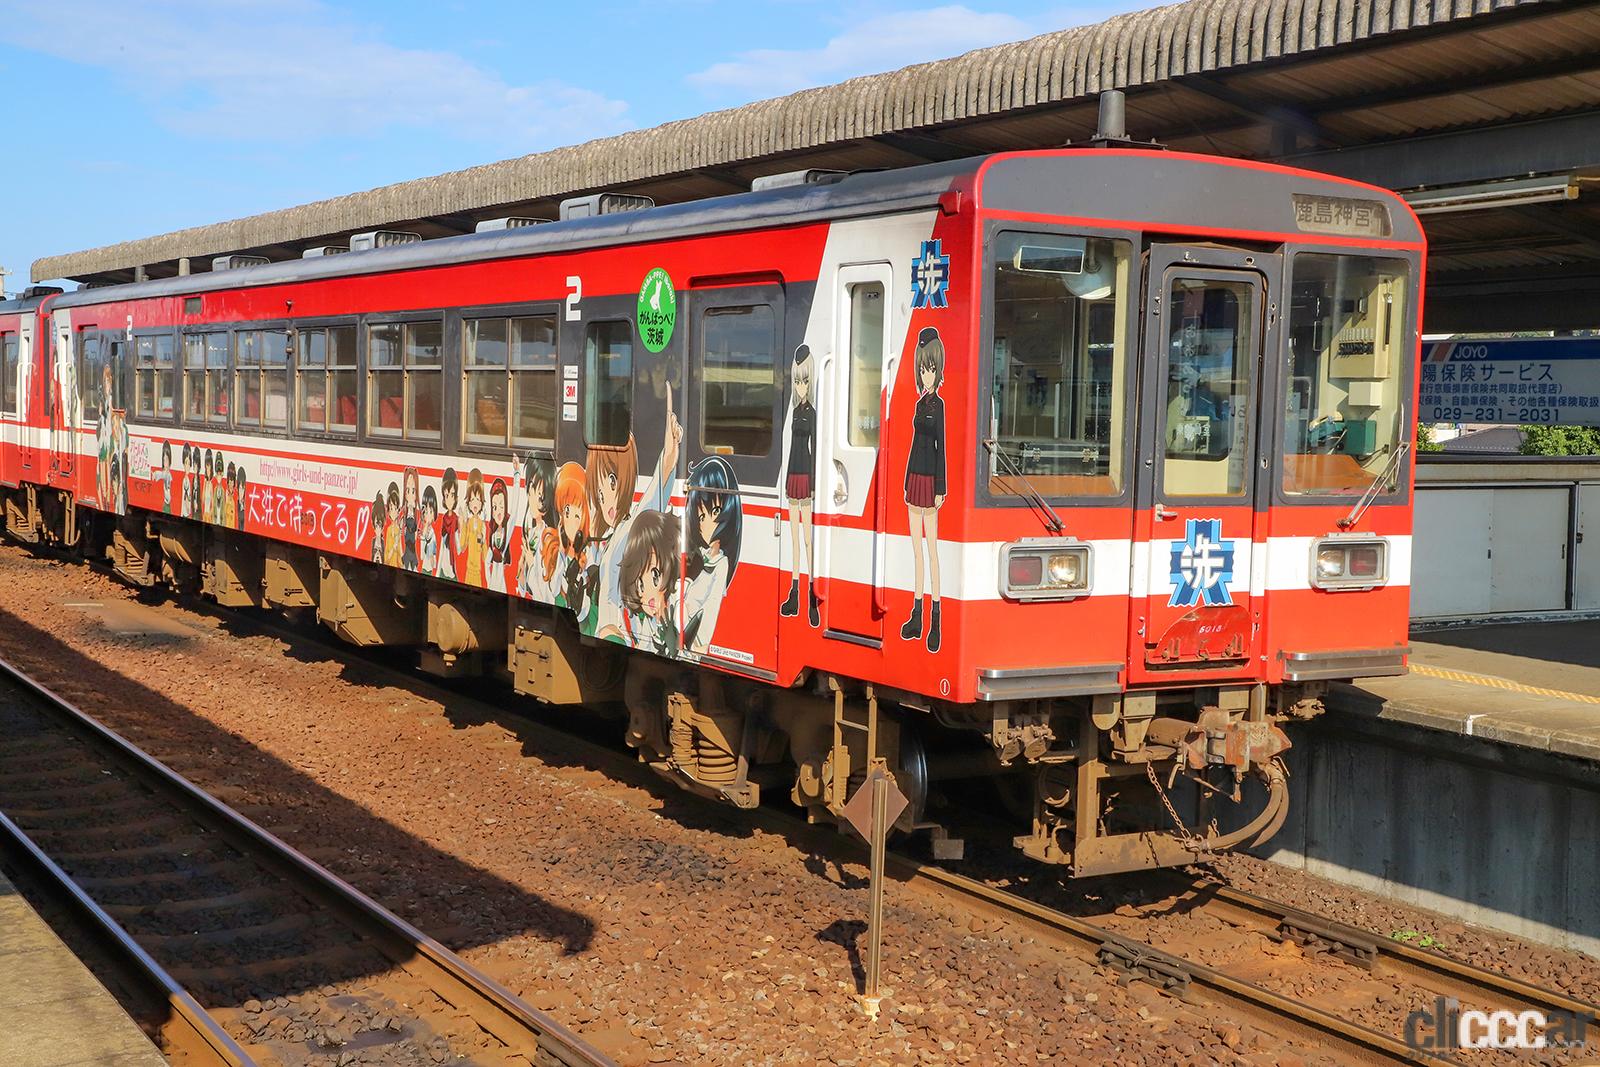 アニメの聖地を走る「ガルパン列車」が運行終了。引退イベントも開催 